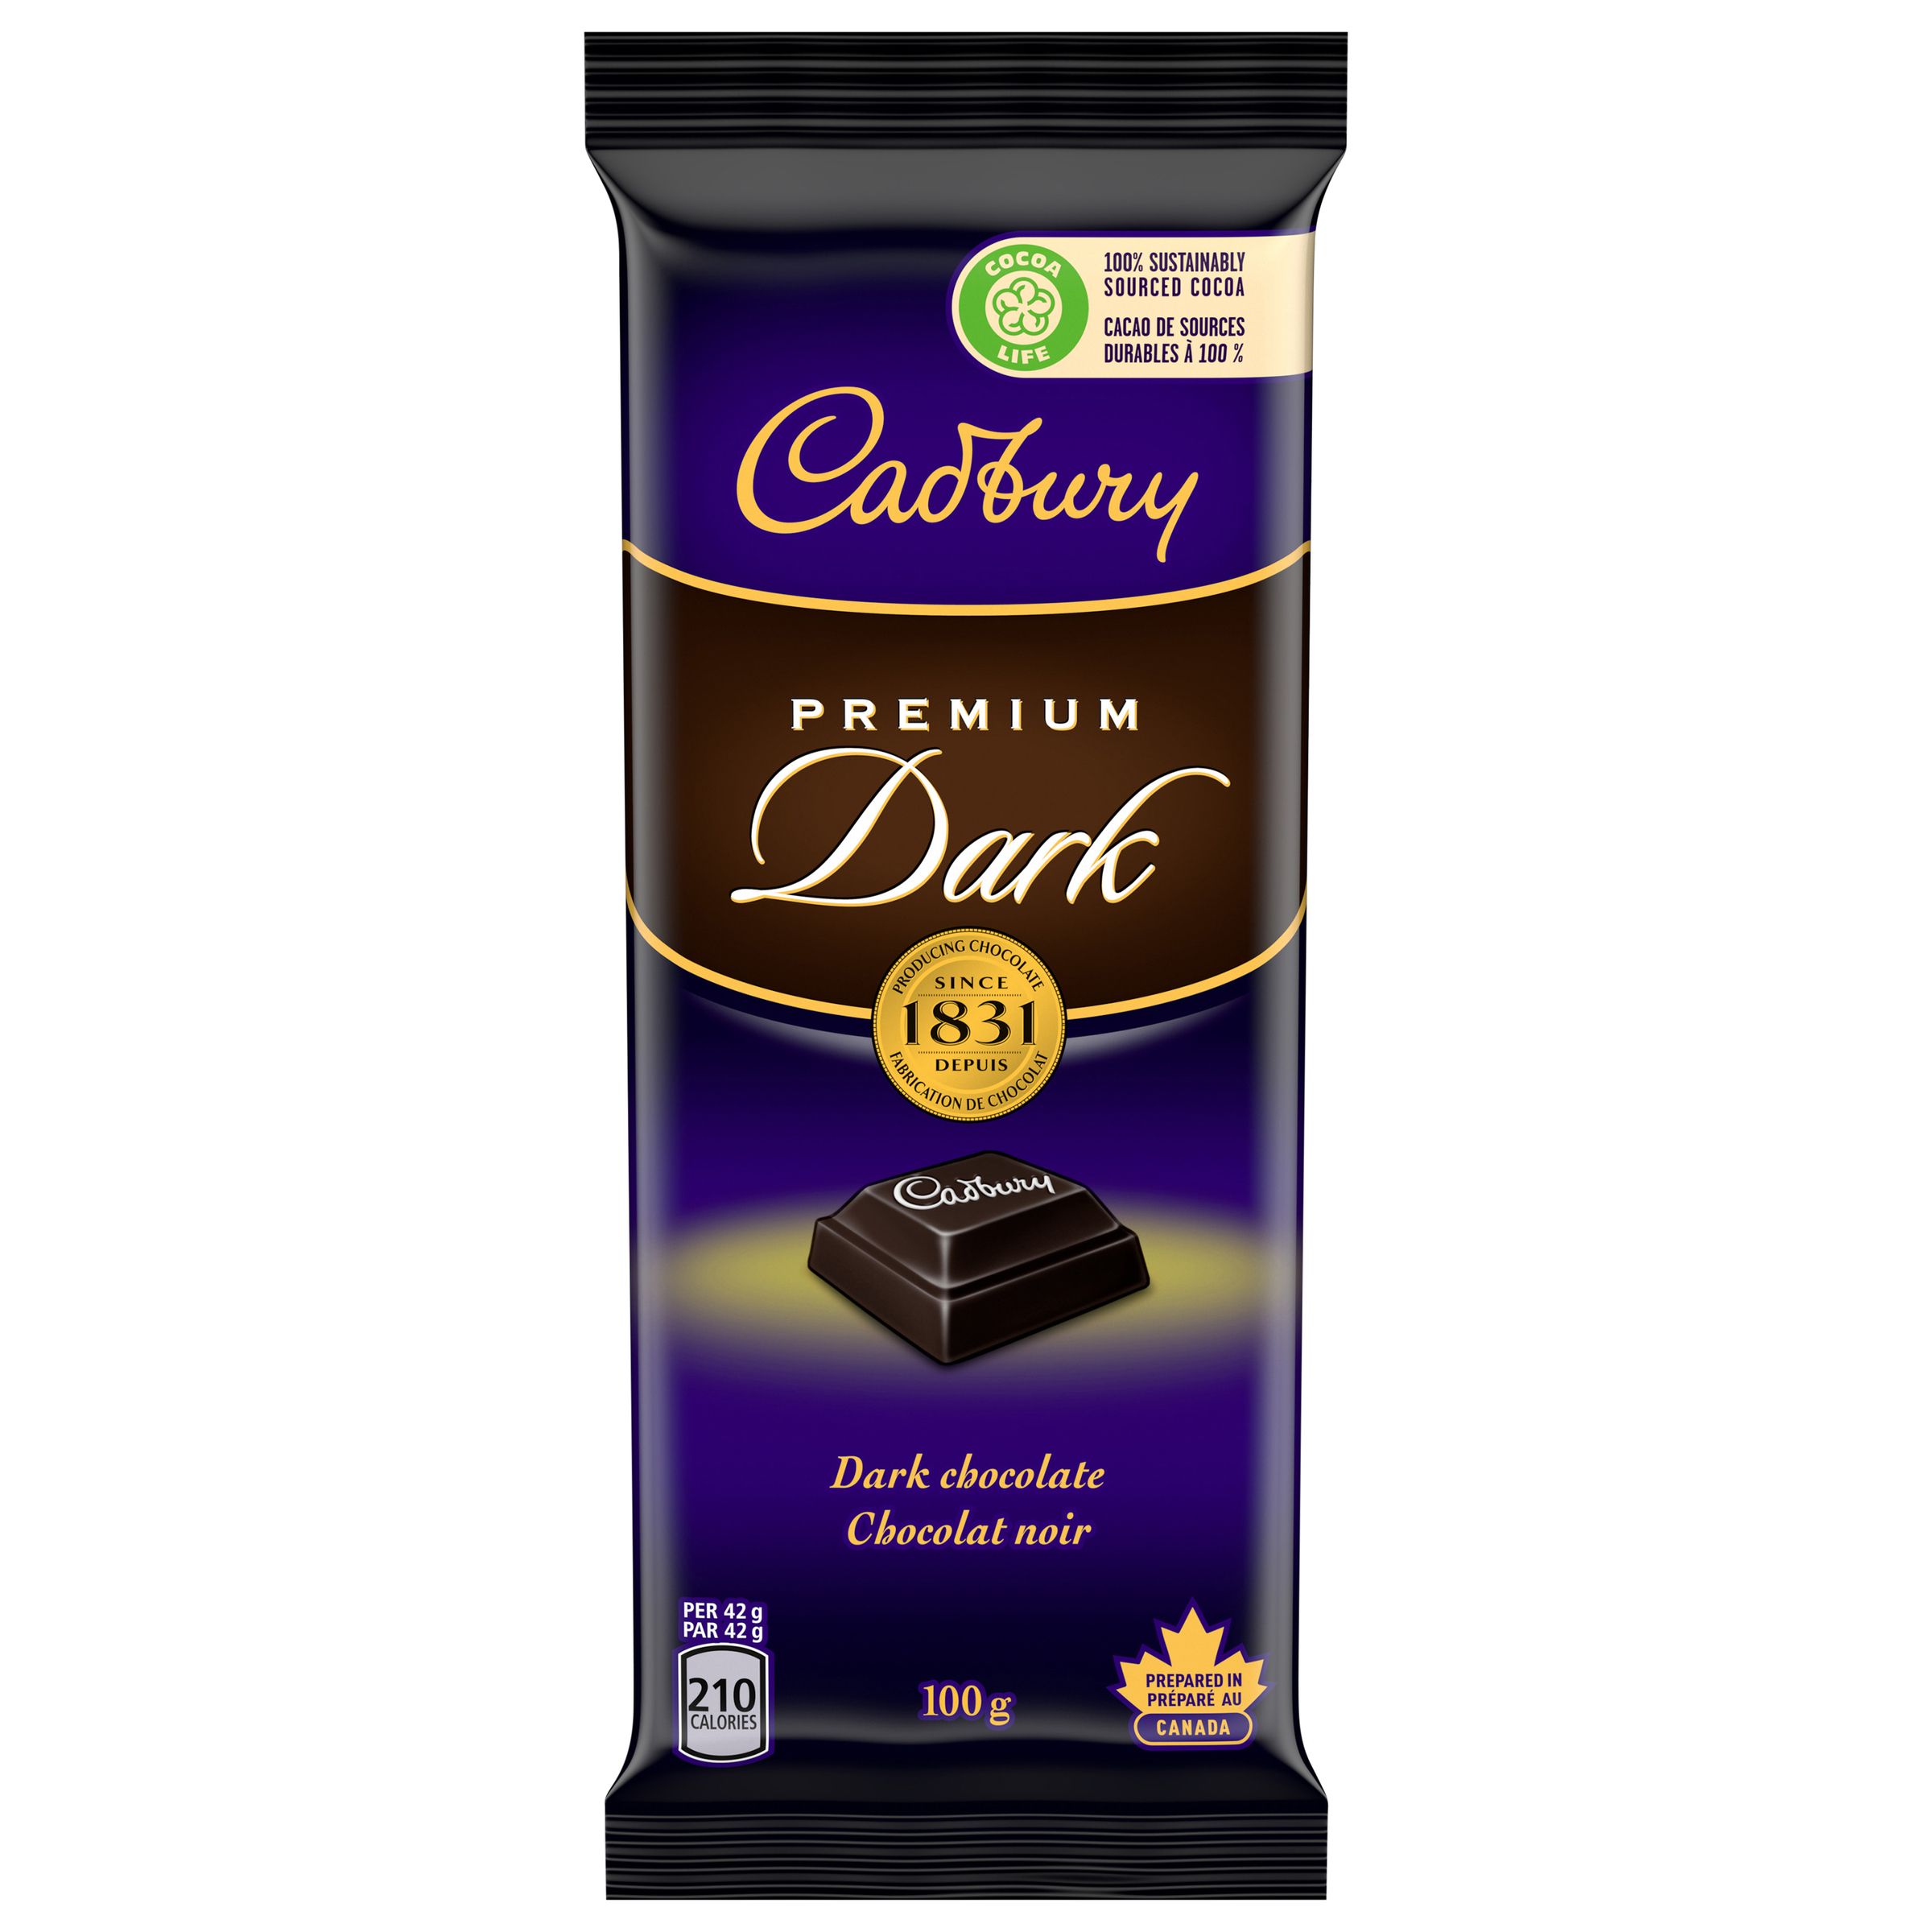 Cadbury Premium Dark, Dark Chocolate Bars, 100 G-2